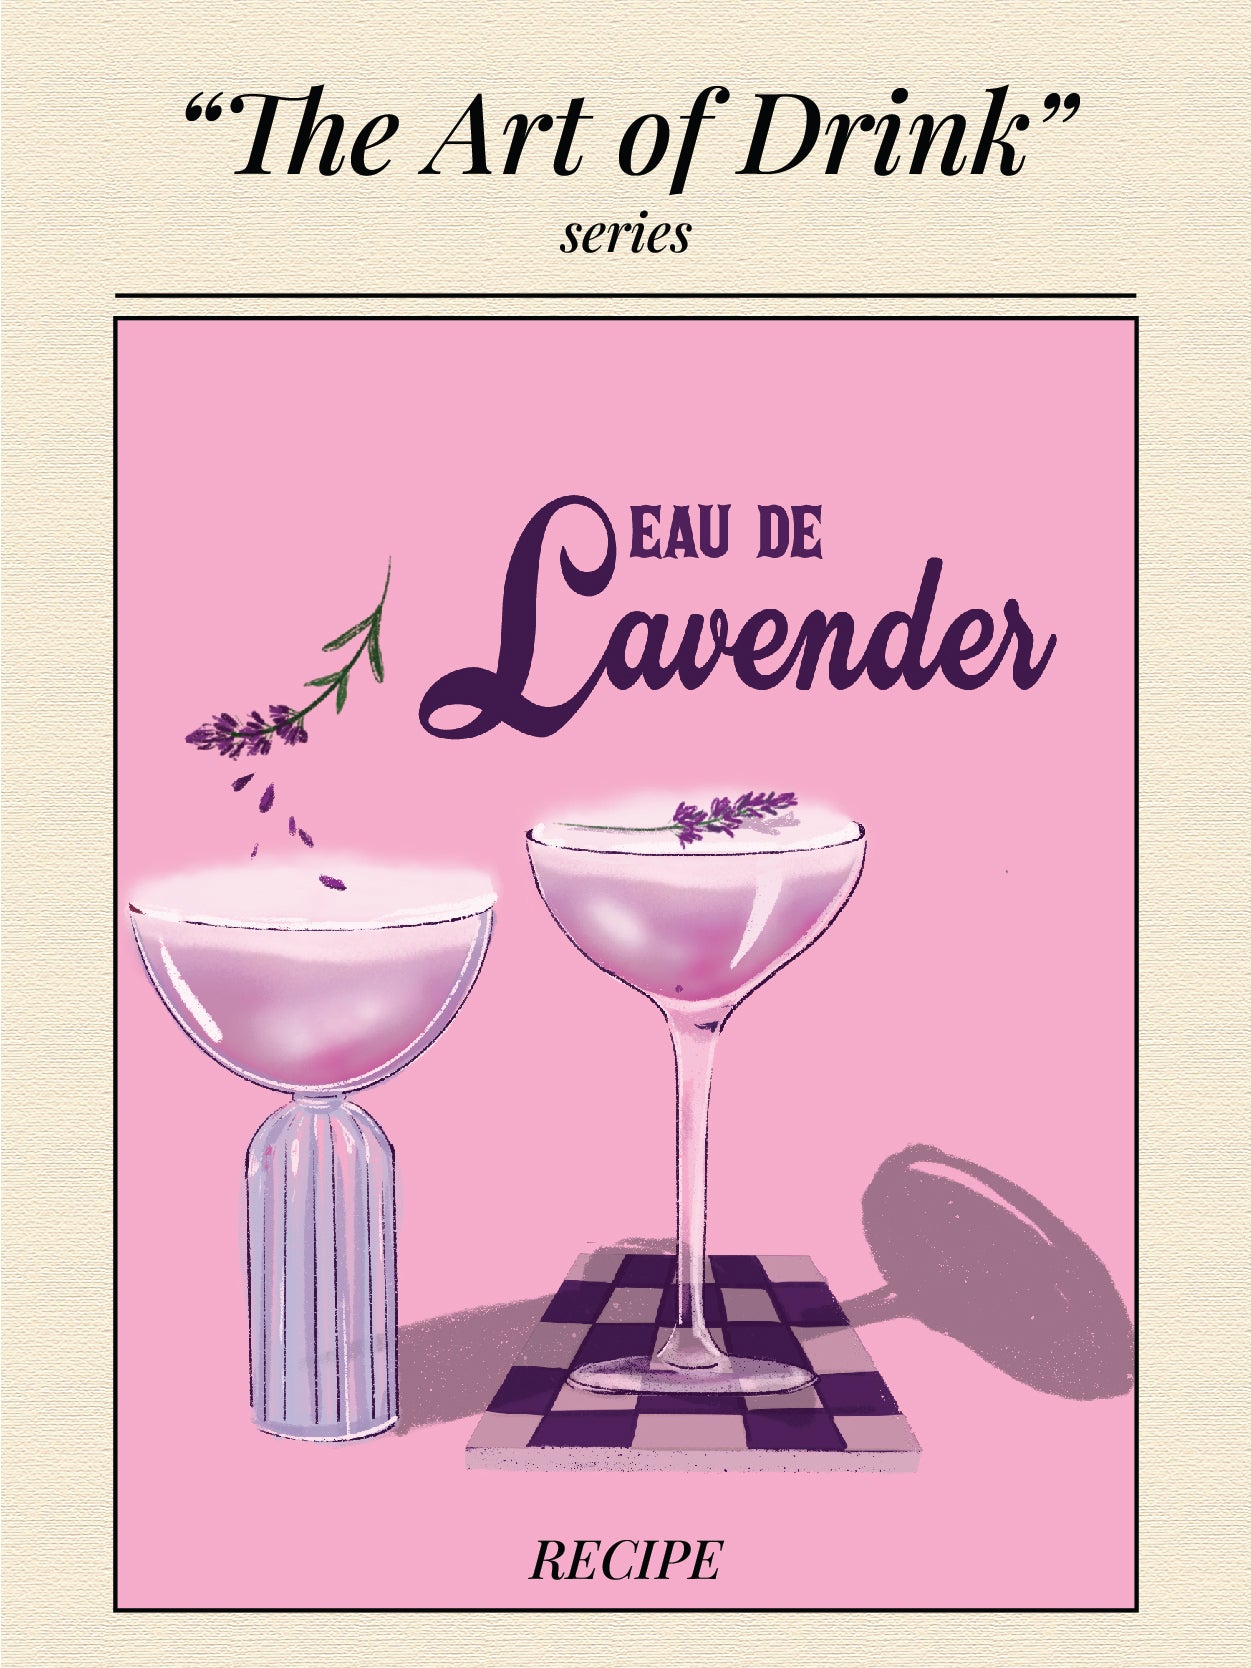 EAU DE LAVENDER - "The Art of Drink" series